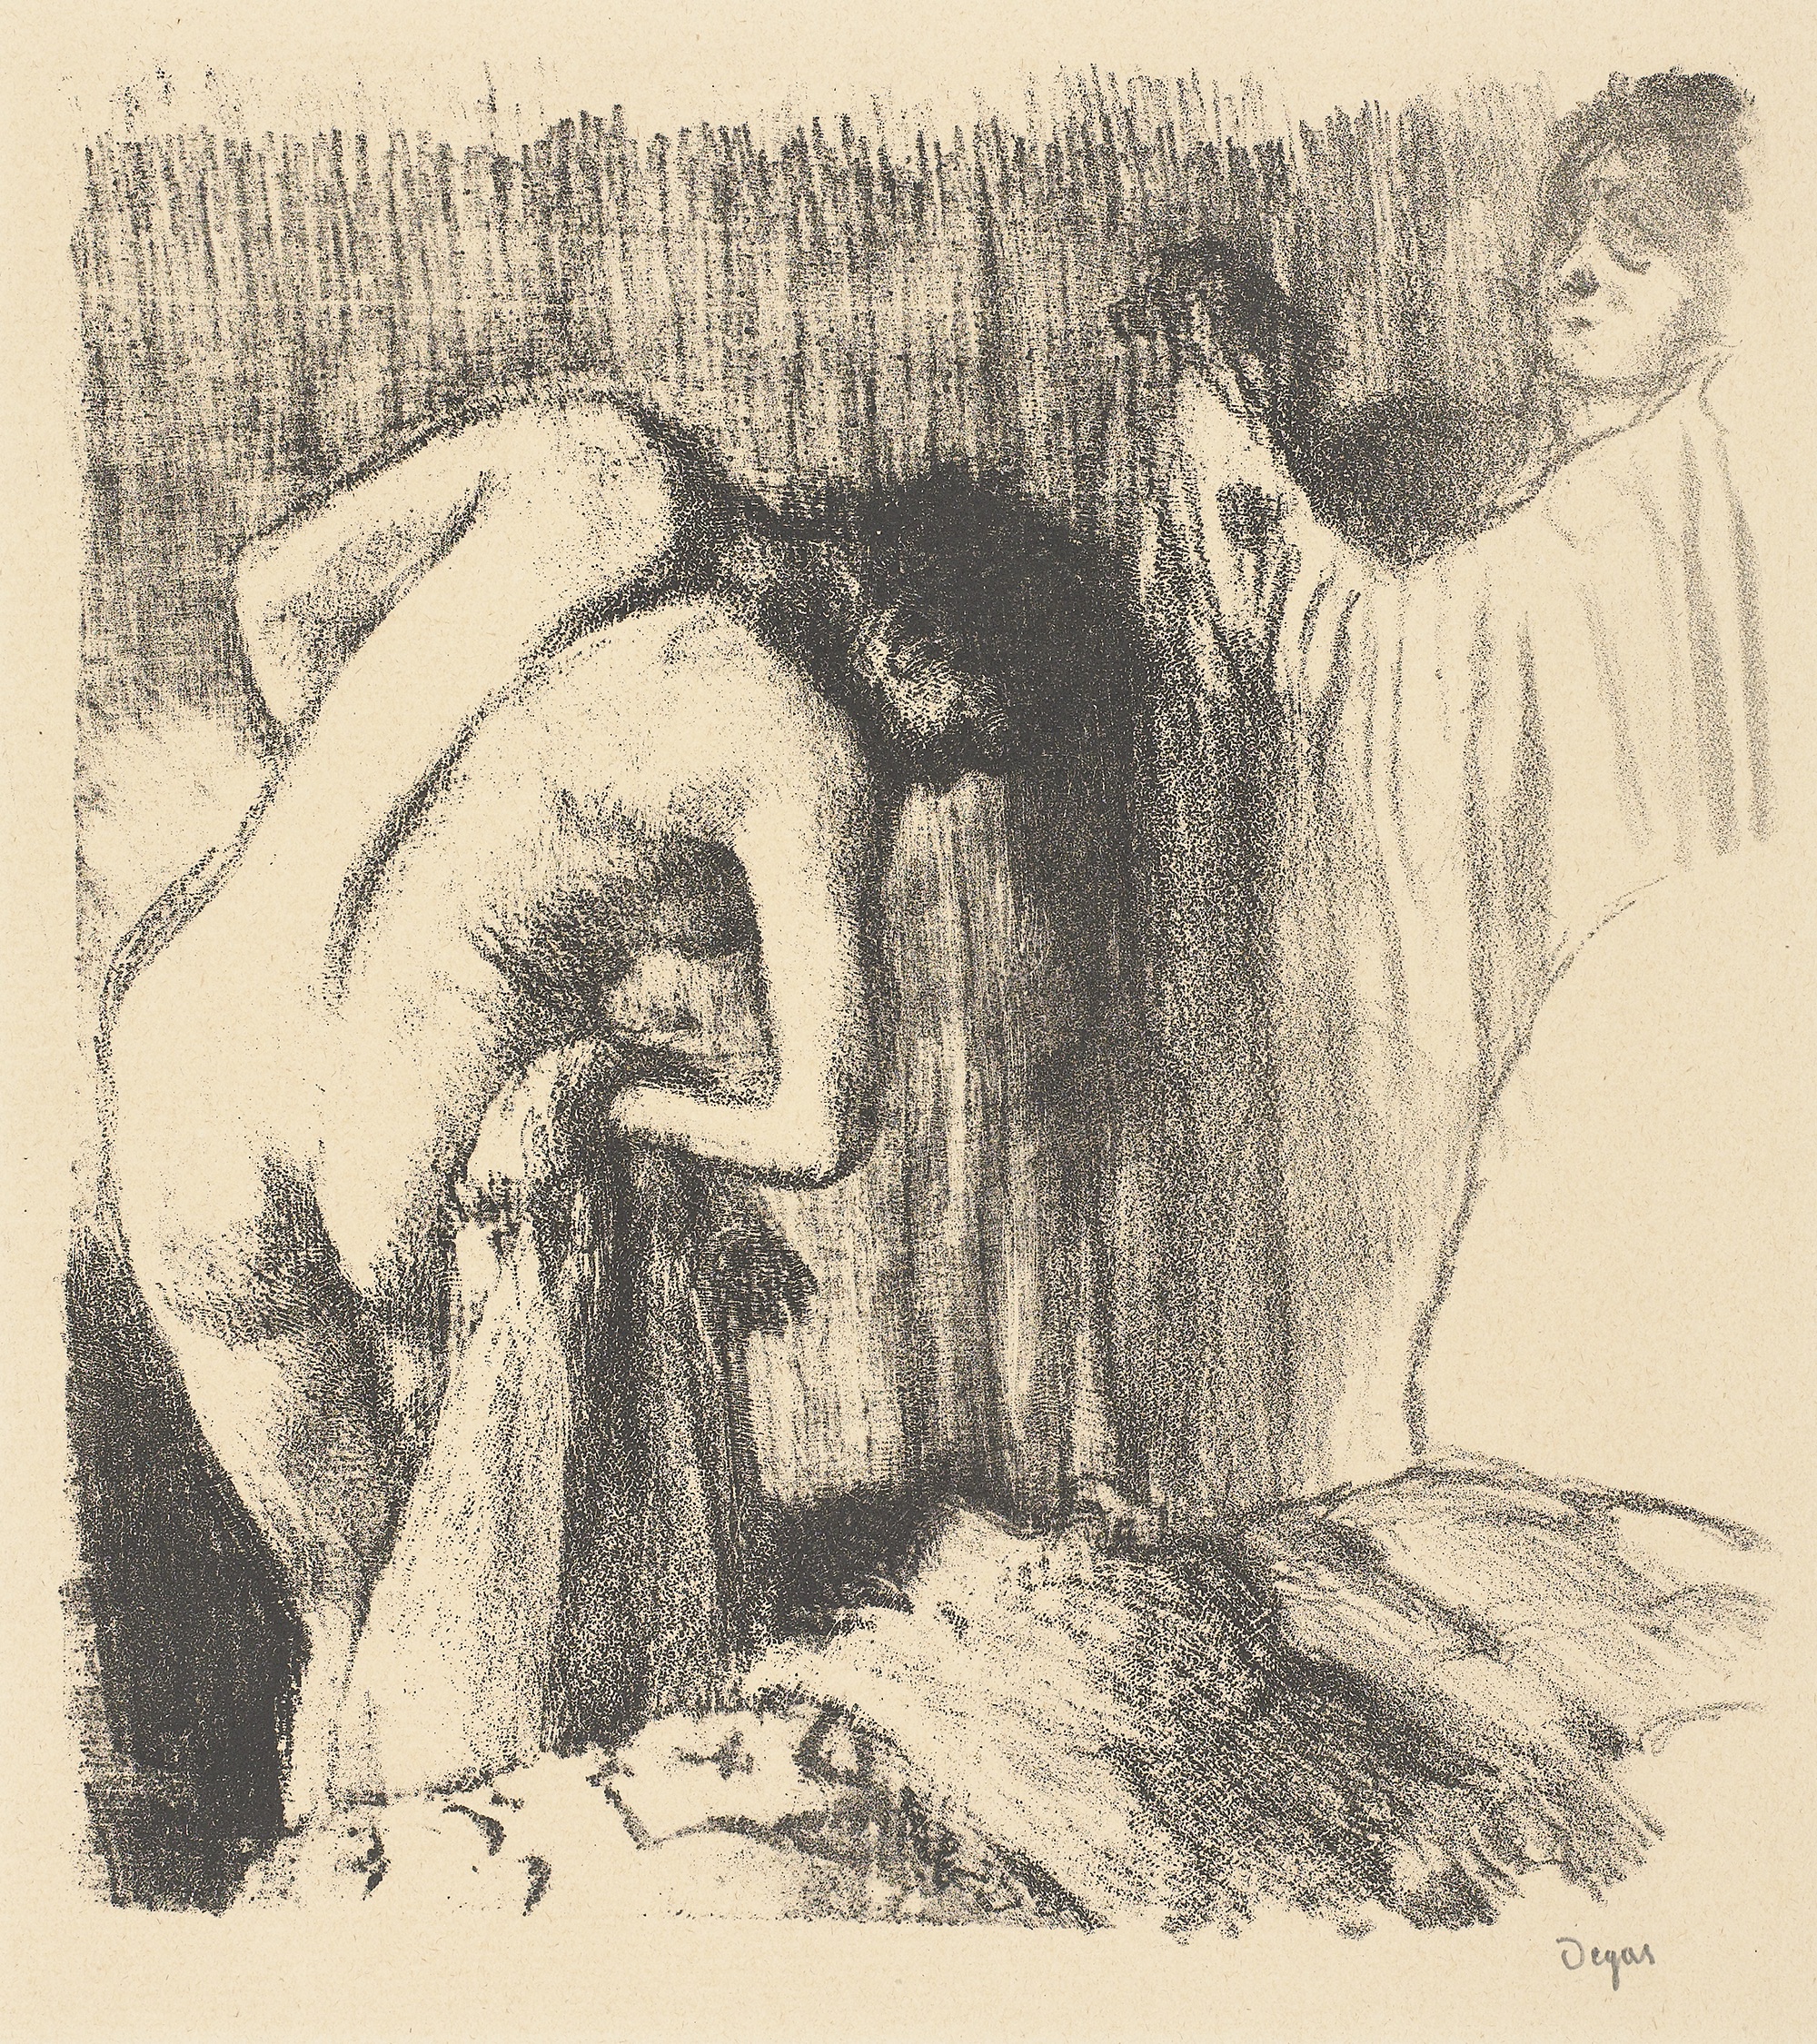 Femeie uscându-se după baie  by Edgar Degas - 1891-1892 - 250 x 230 mm 